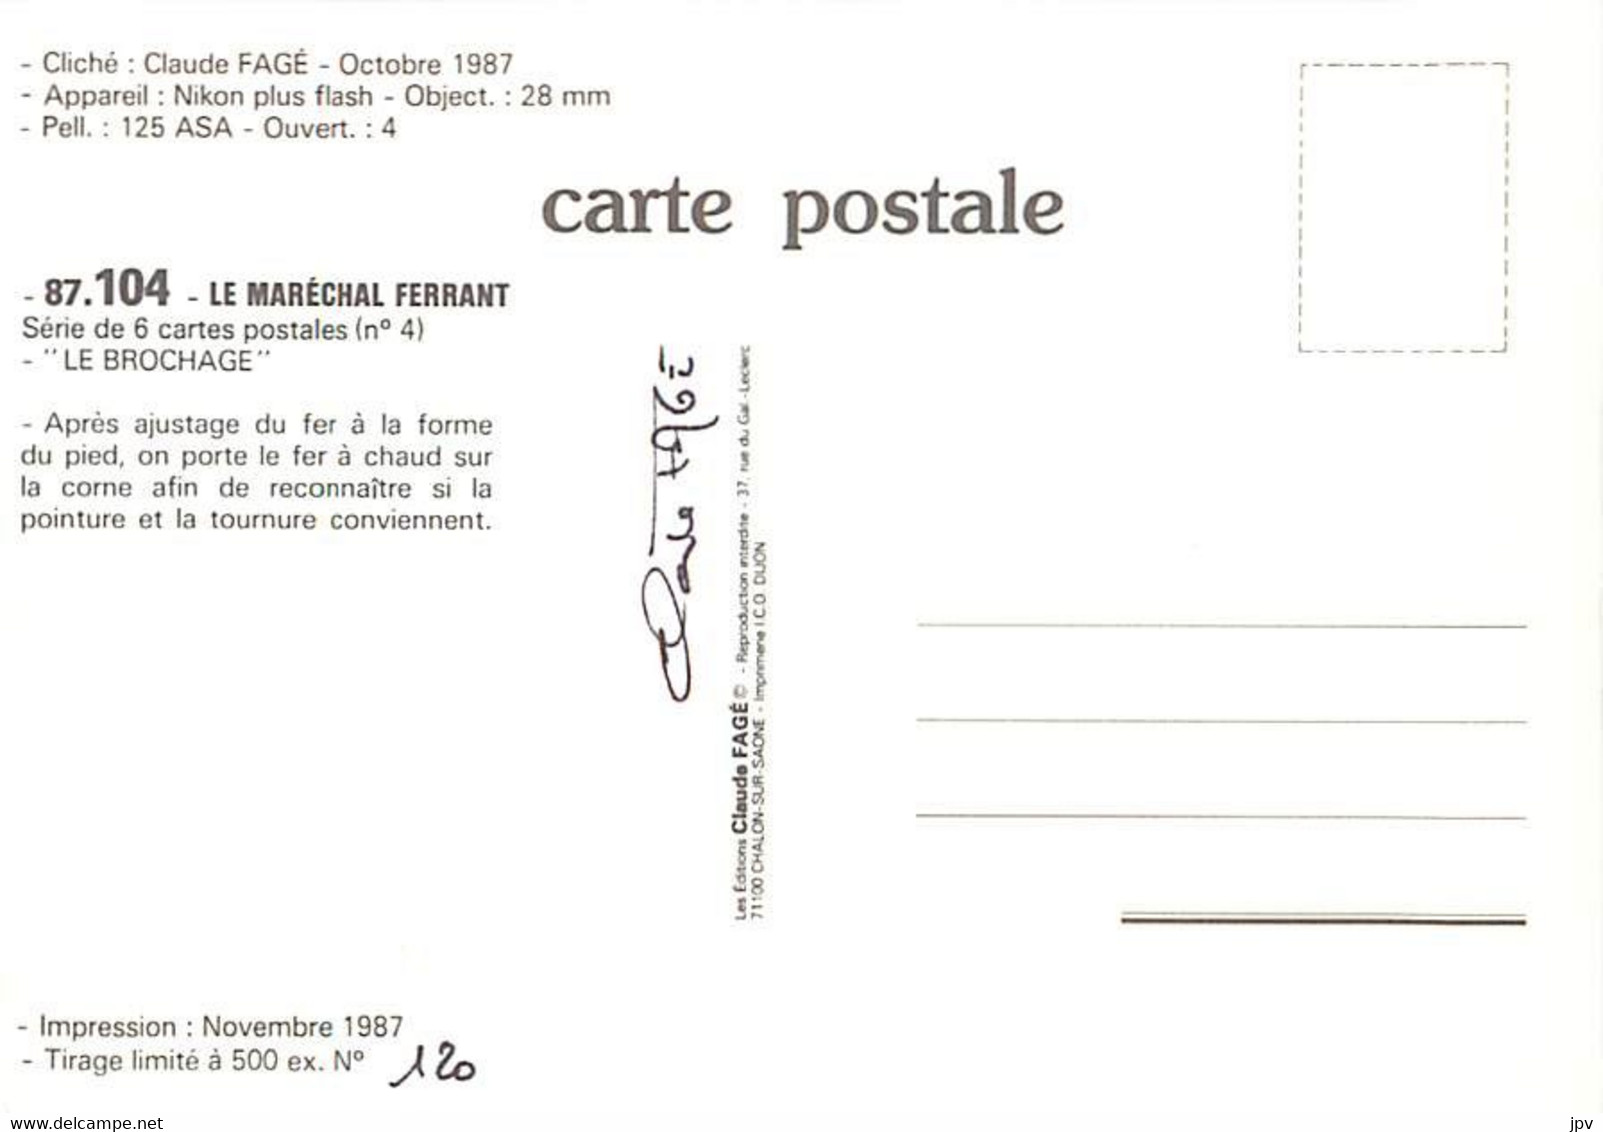 COUBLANC. Le Maréchal-Ferrant M.CROZET Maurice. Premier Ouvrier de france en 1982. Lot de 6 cartes.